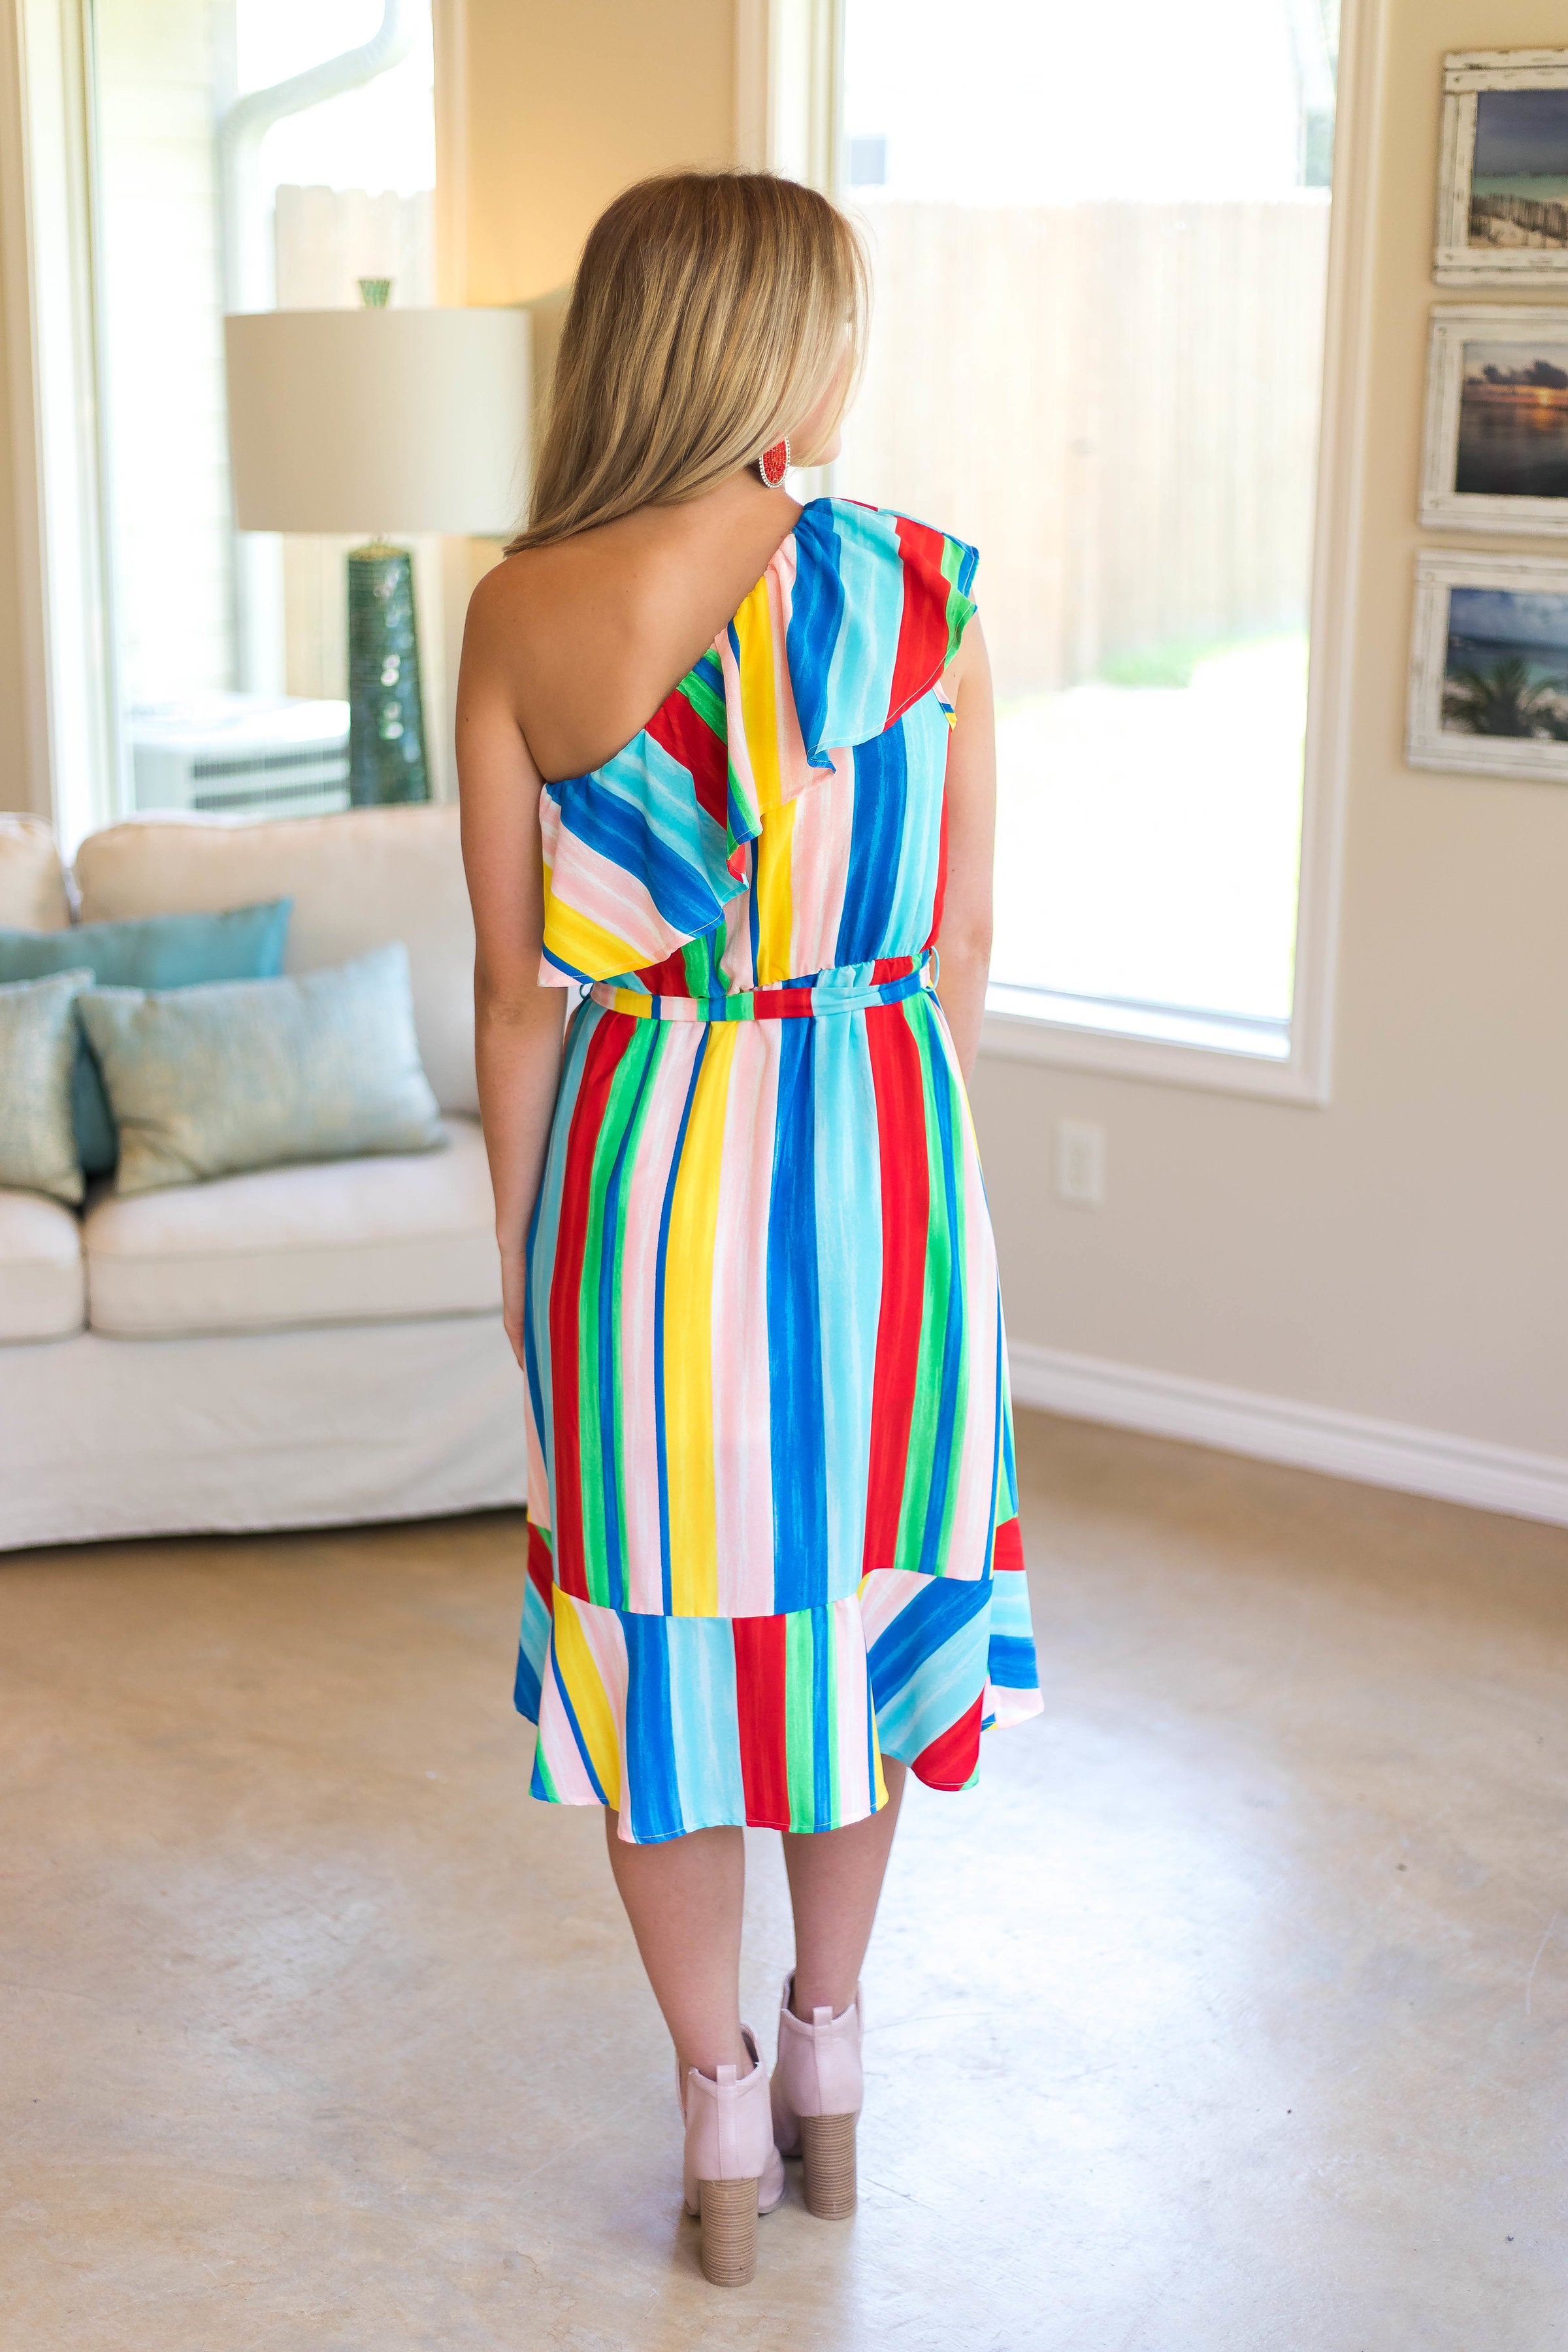 World of Color Multi Color One Shoulder Dress - Giddy Up Glamour Boutique